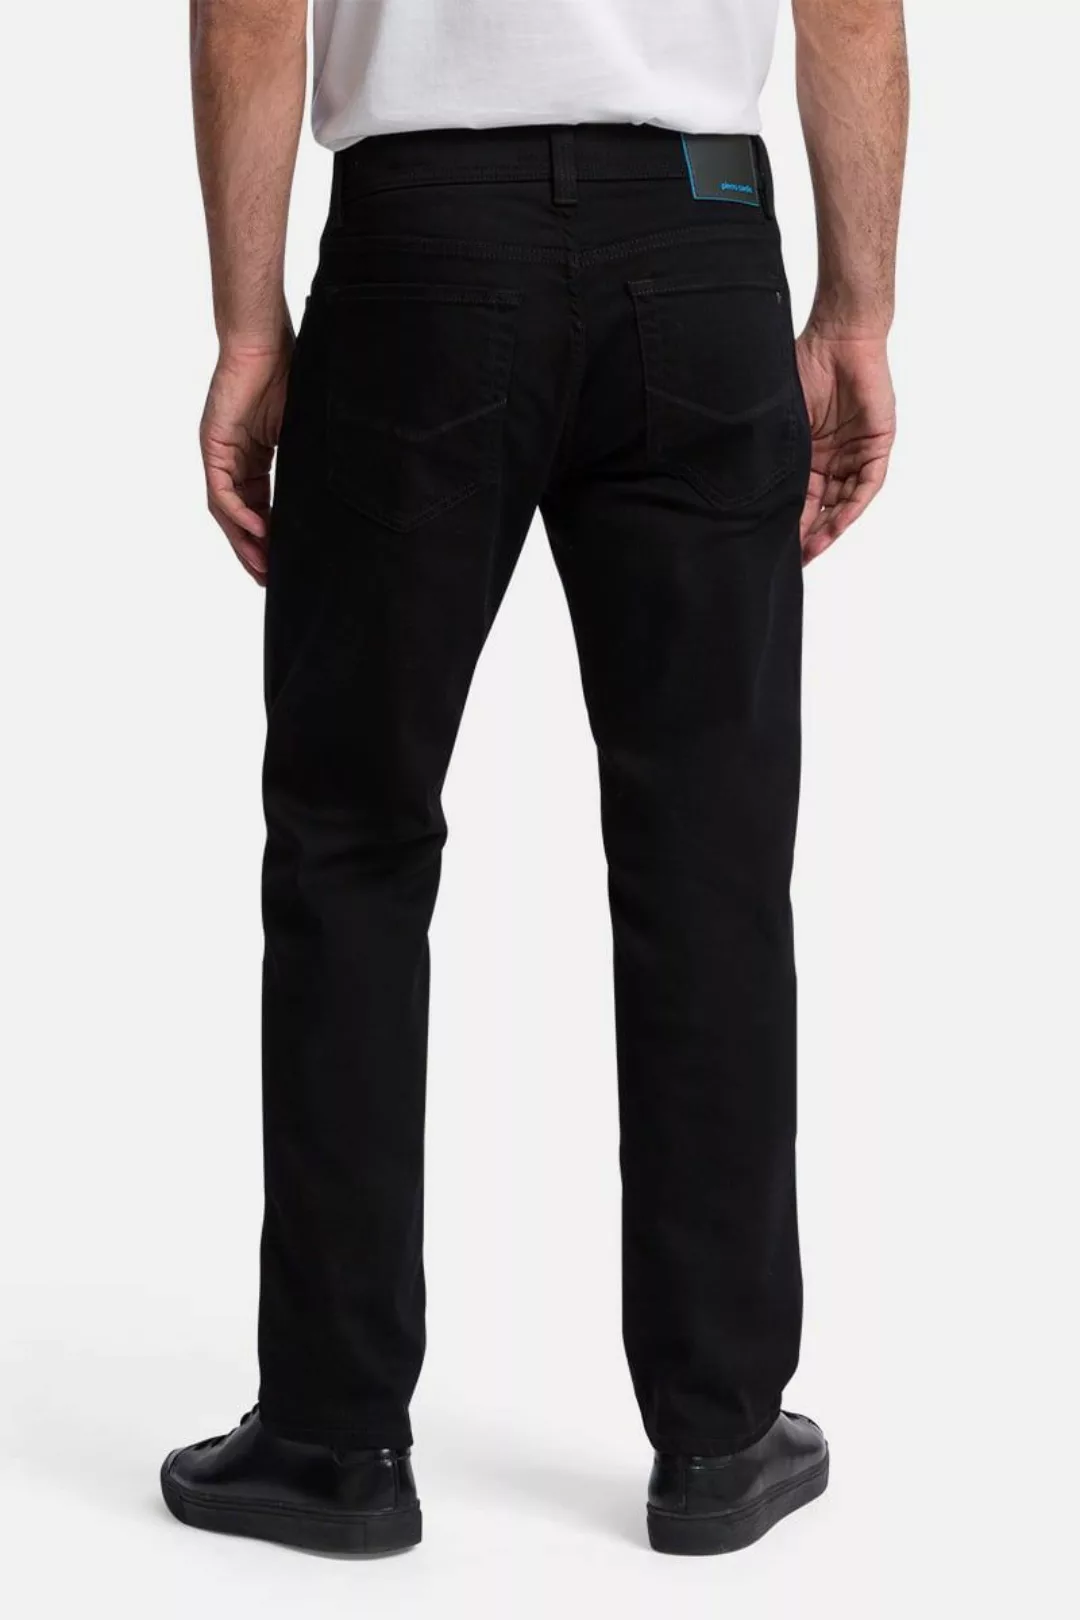 Pierre Cardin Trousers Lyon Tapered Future Flex Schwarz - Größe W 42 - L 34 günstig online kaufen